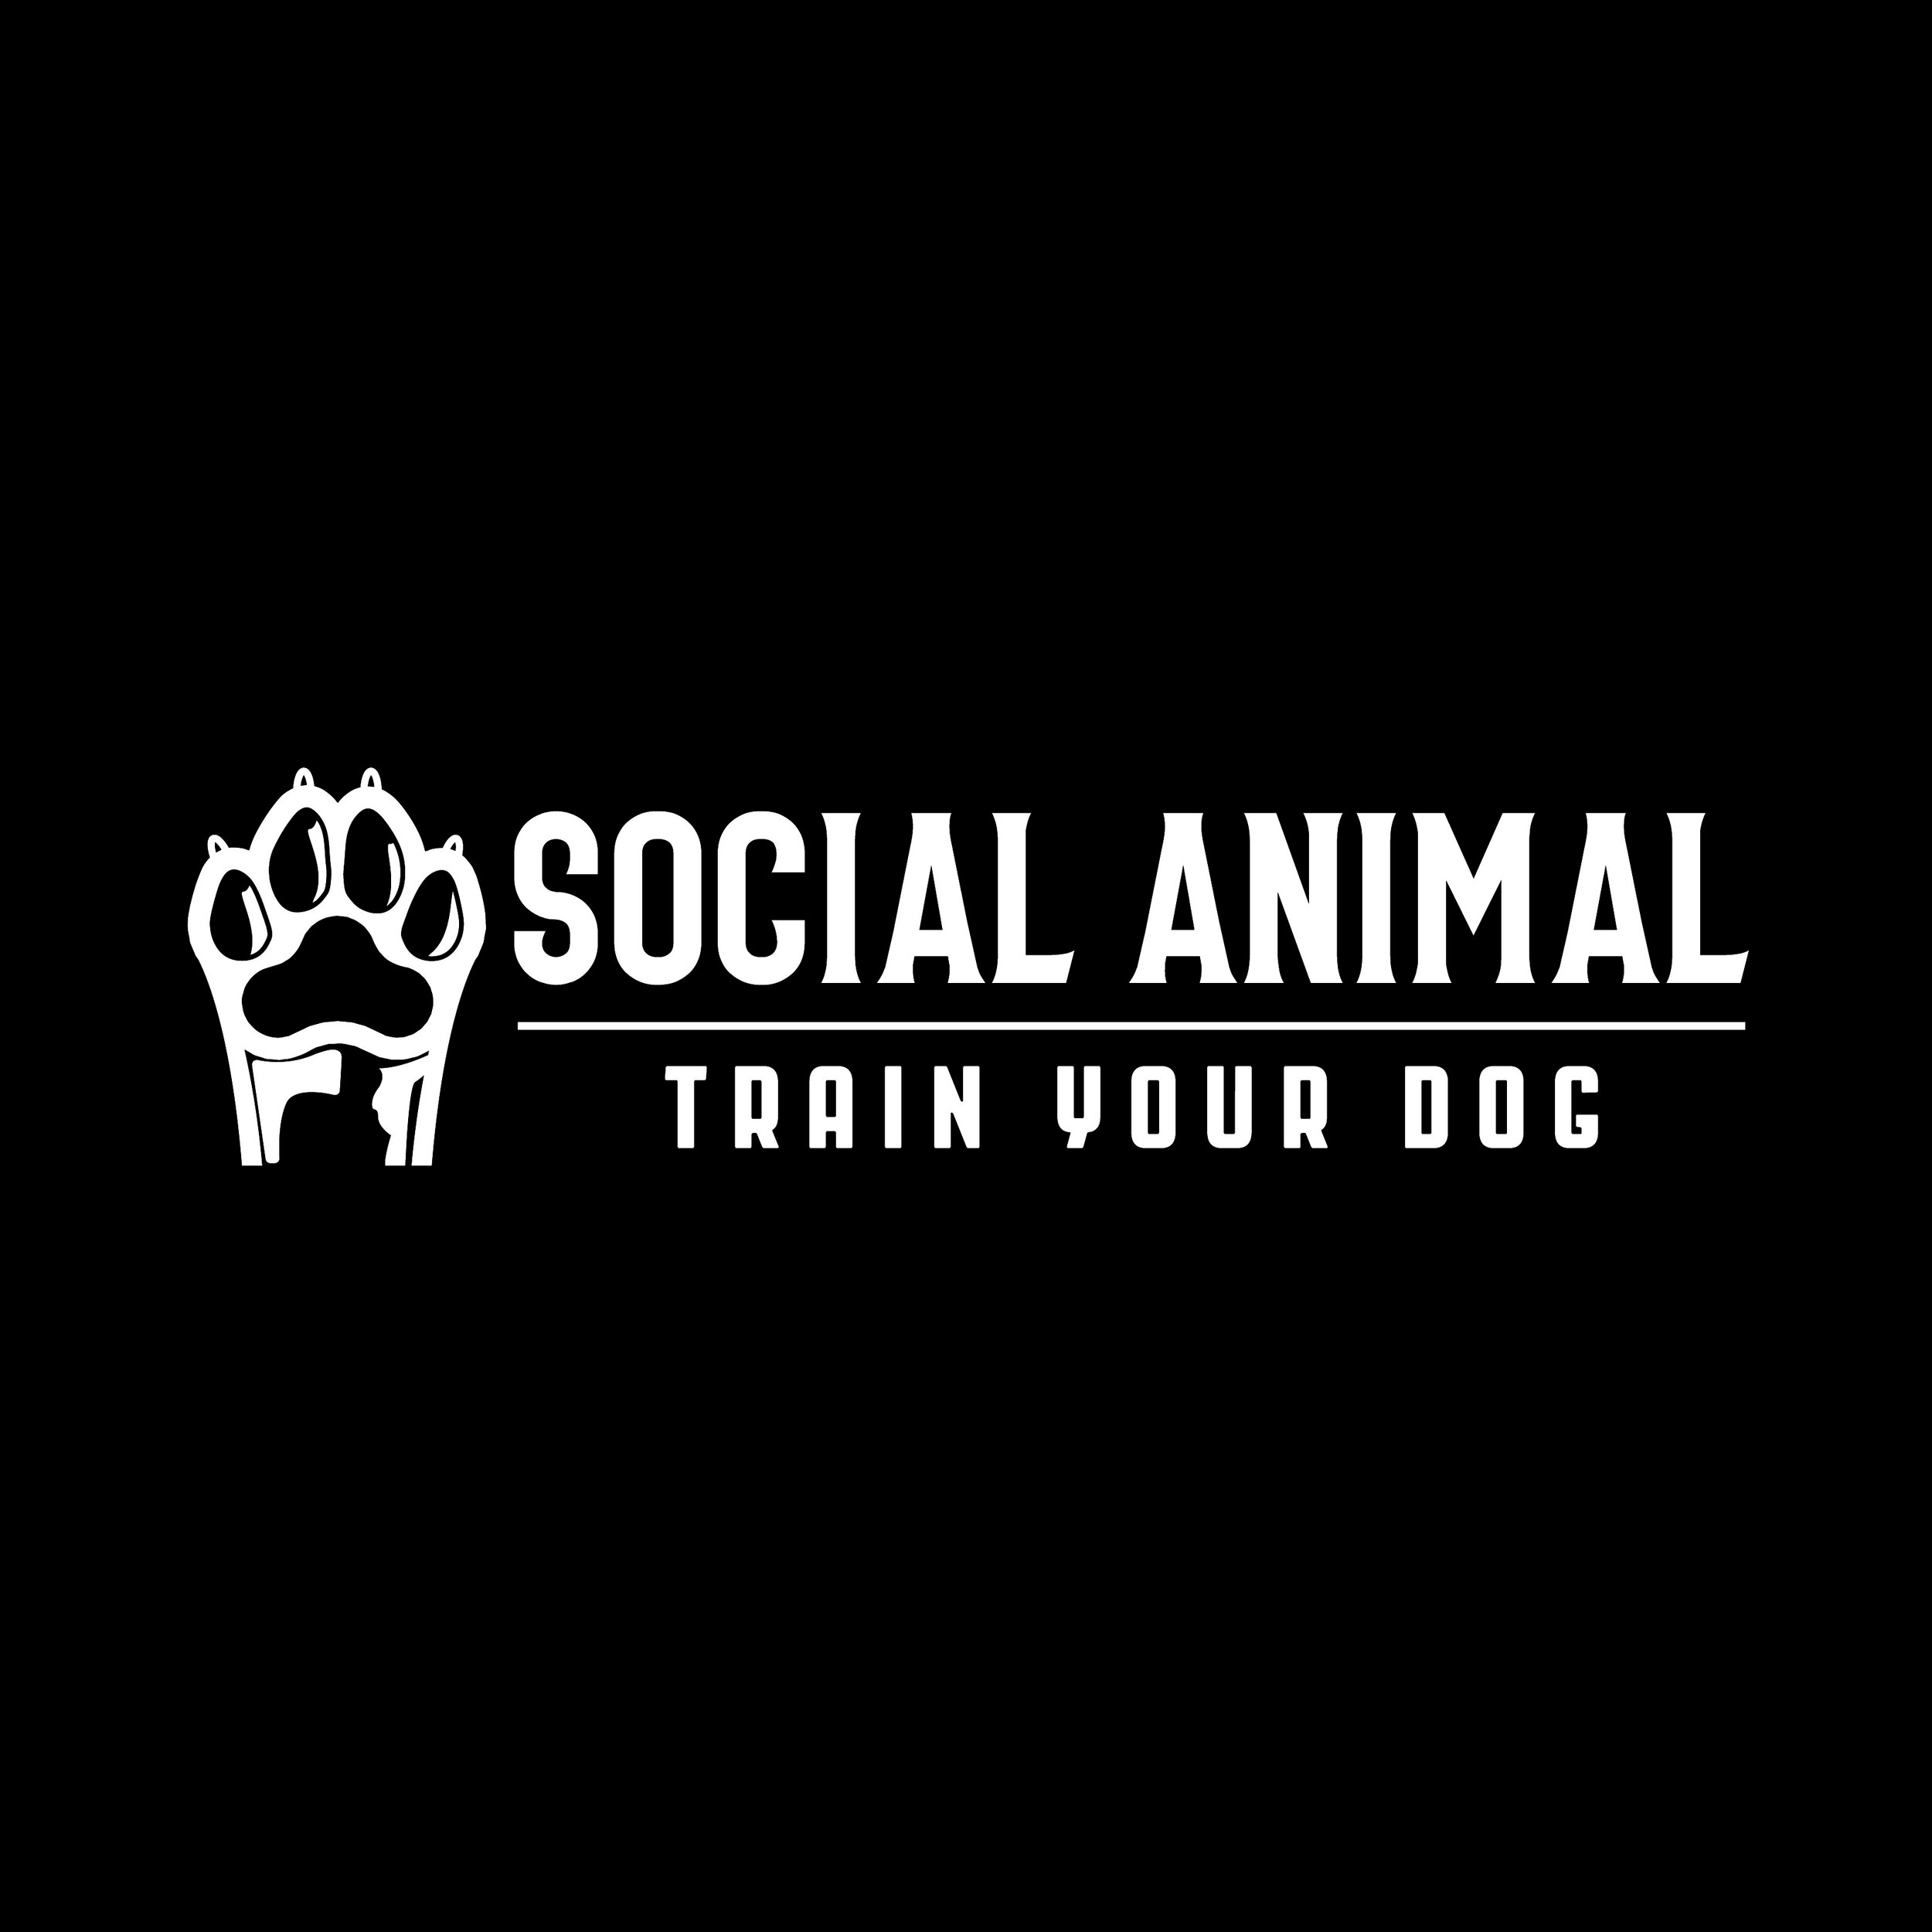 Social Animal Dog Training